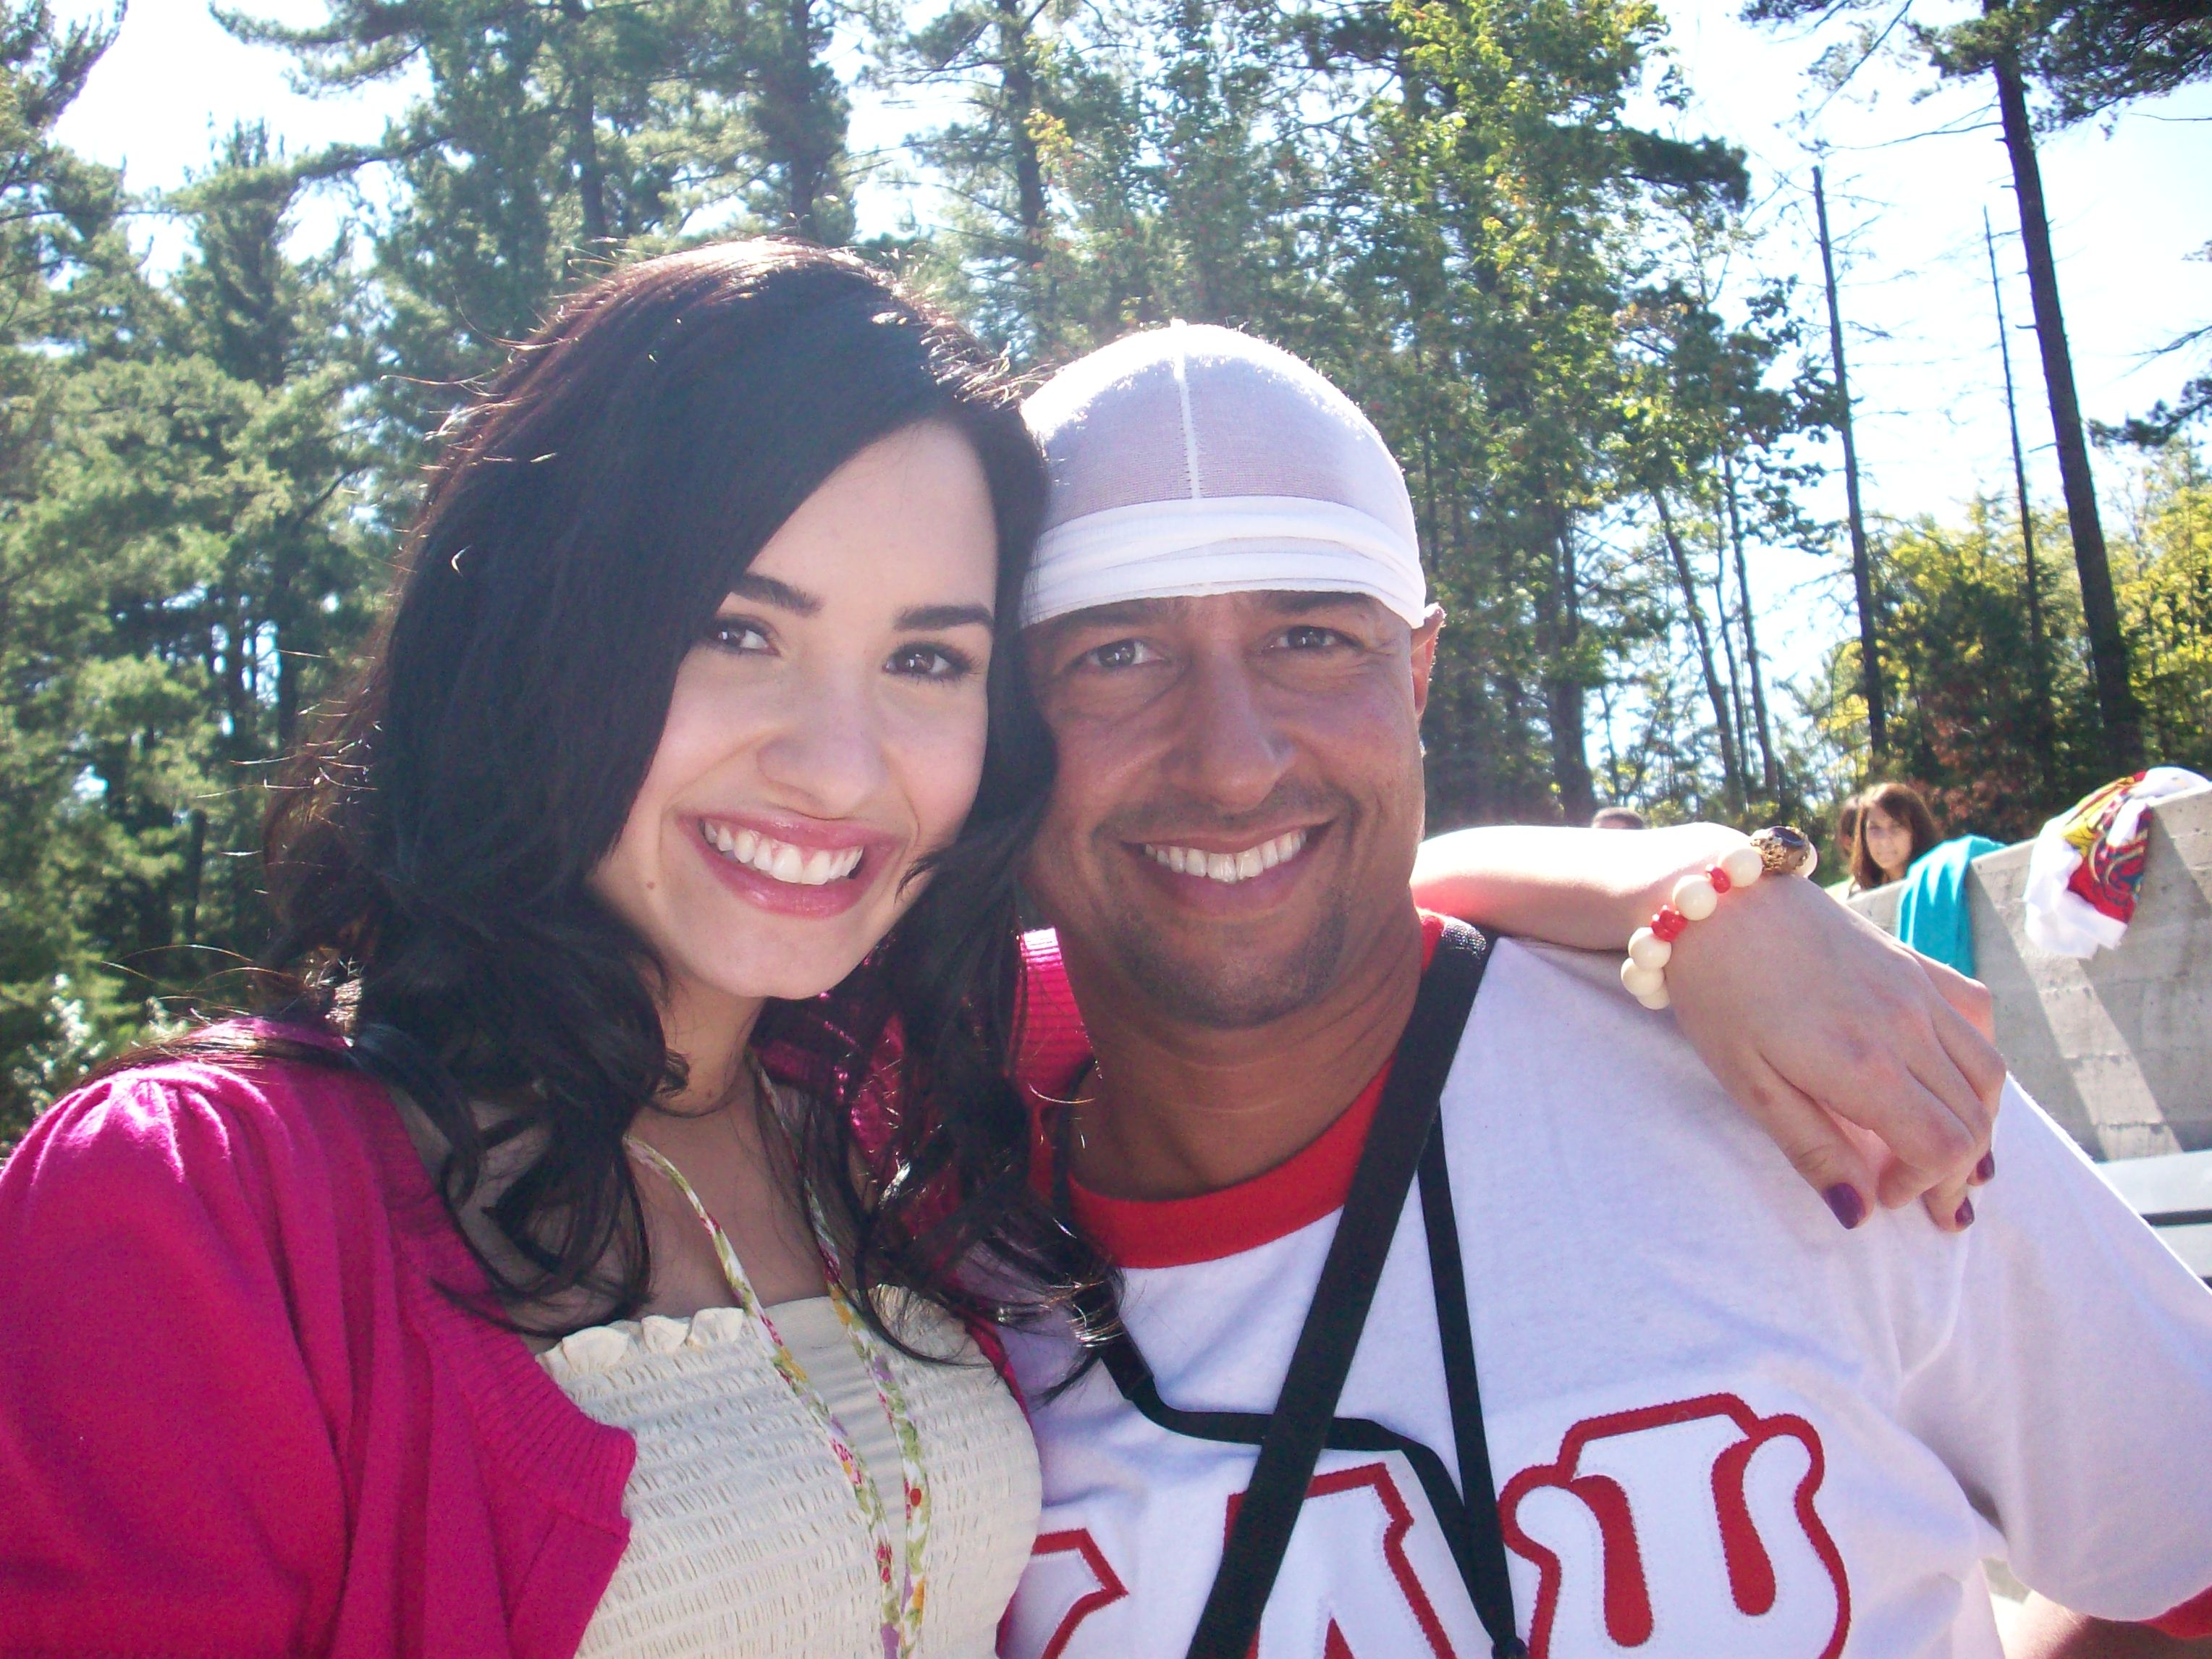 Chuck Maldonado and Demi Lavato on the set of Camp Rock 2